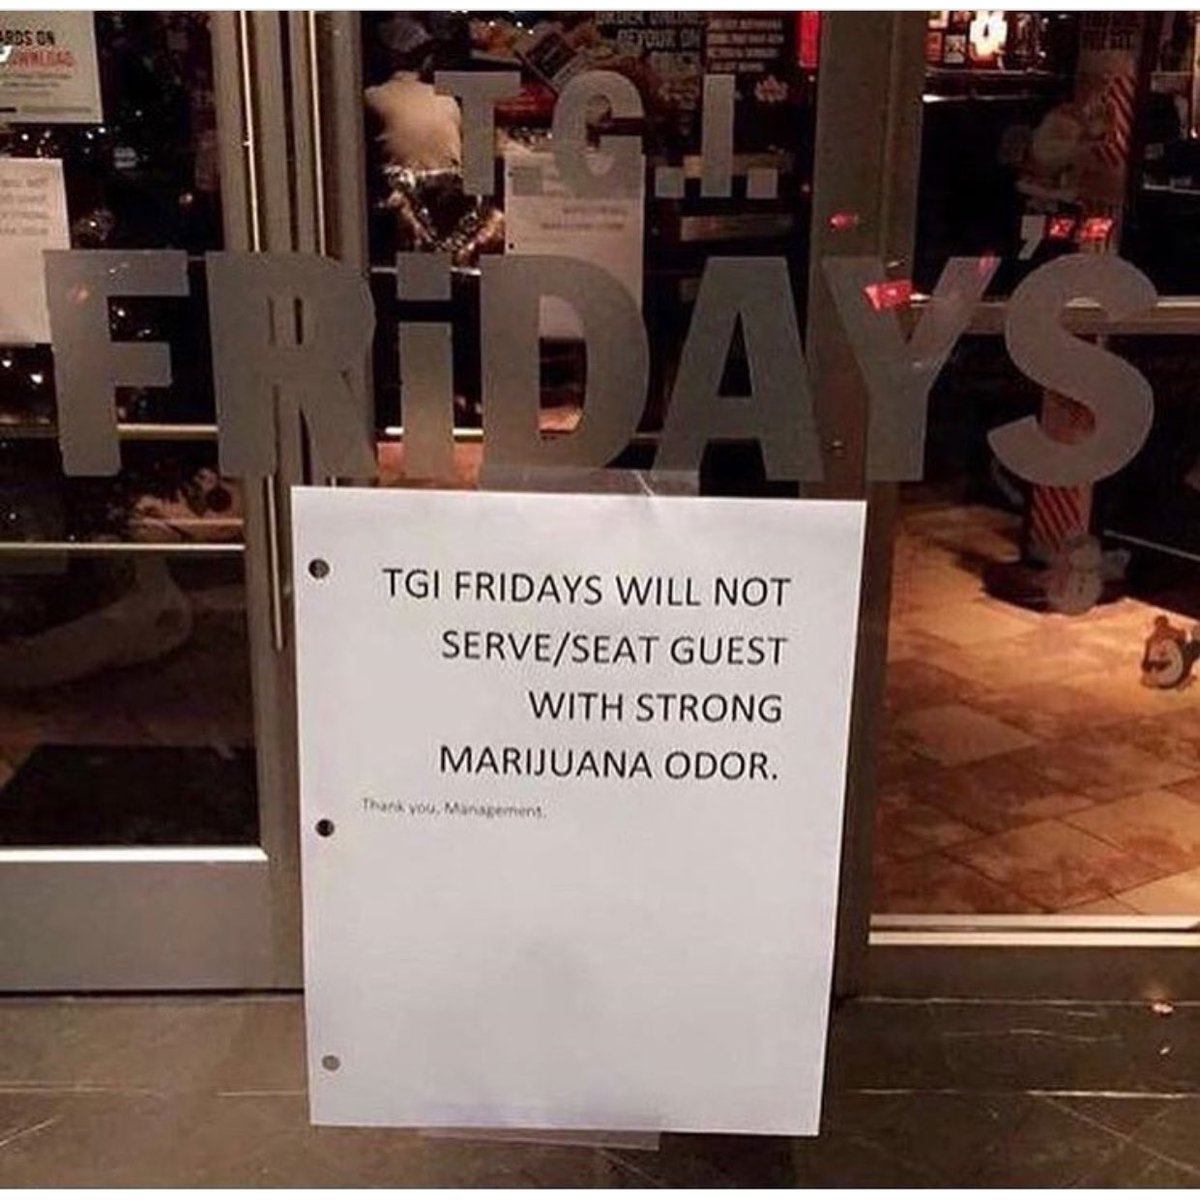 I guess I won't be eating at T.G.I. Fridays anymore. 